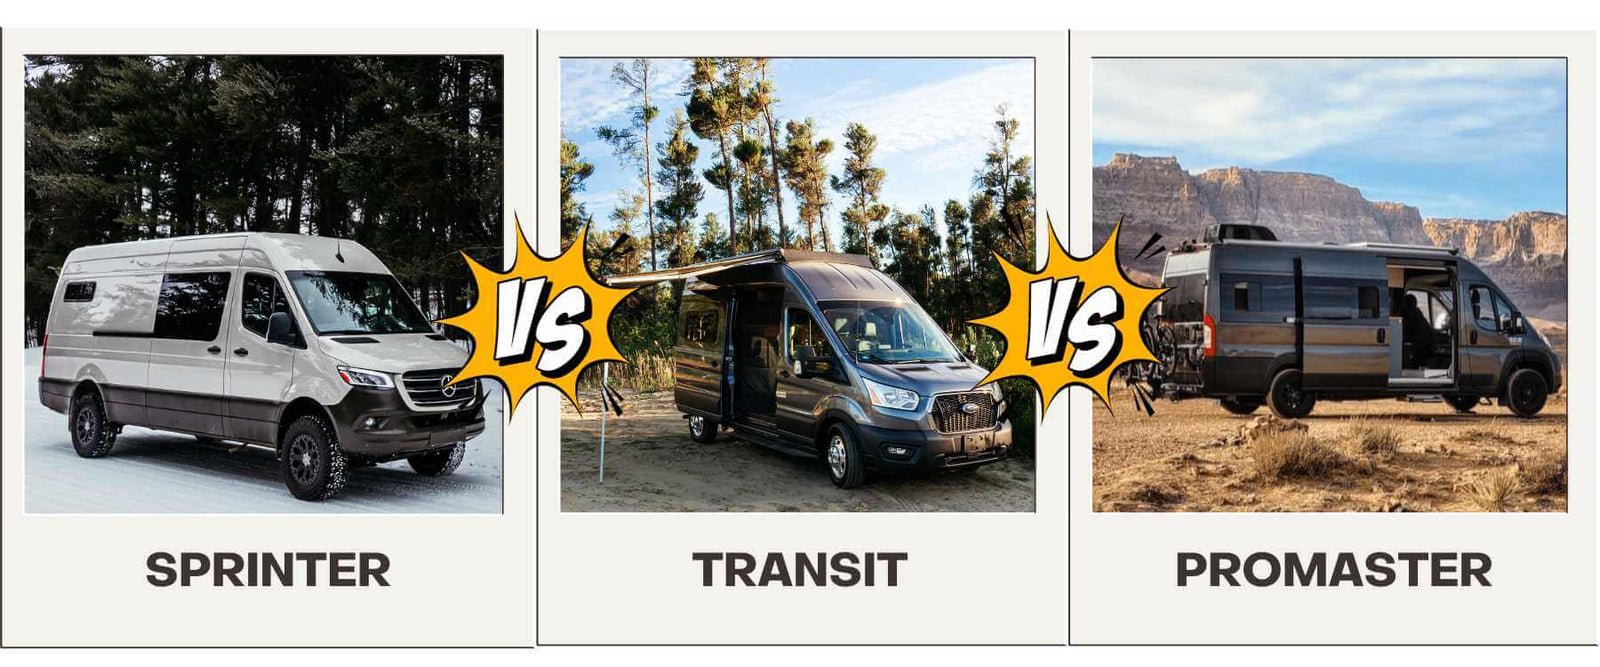 Best campervan converters 2024 - Practical Motorhome